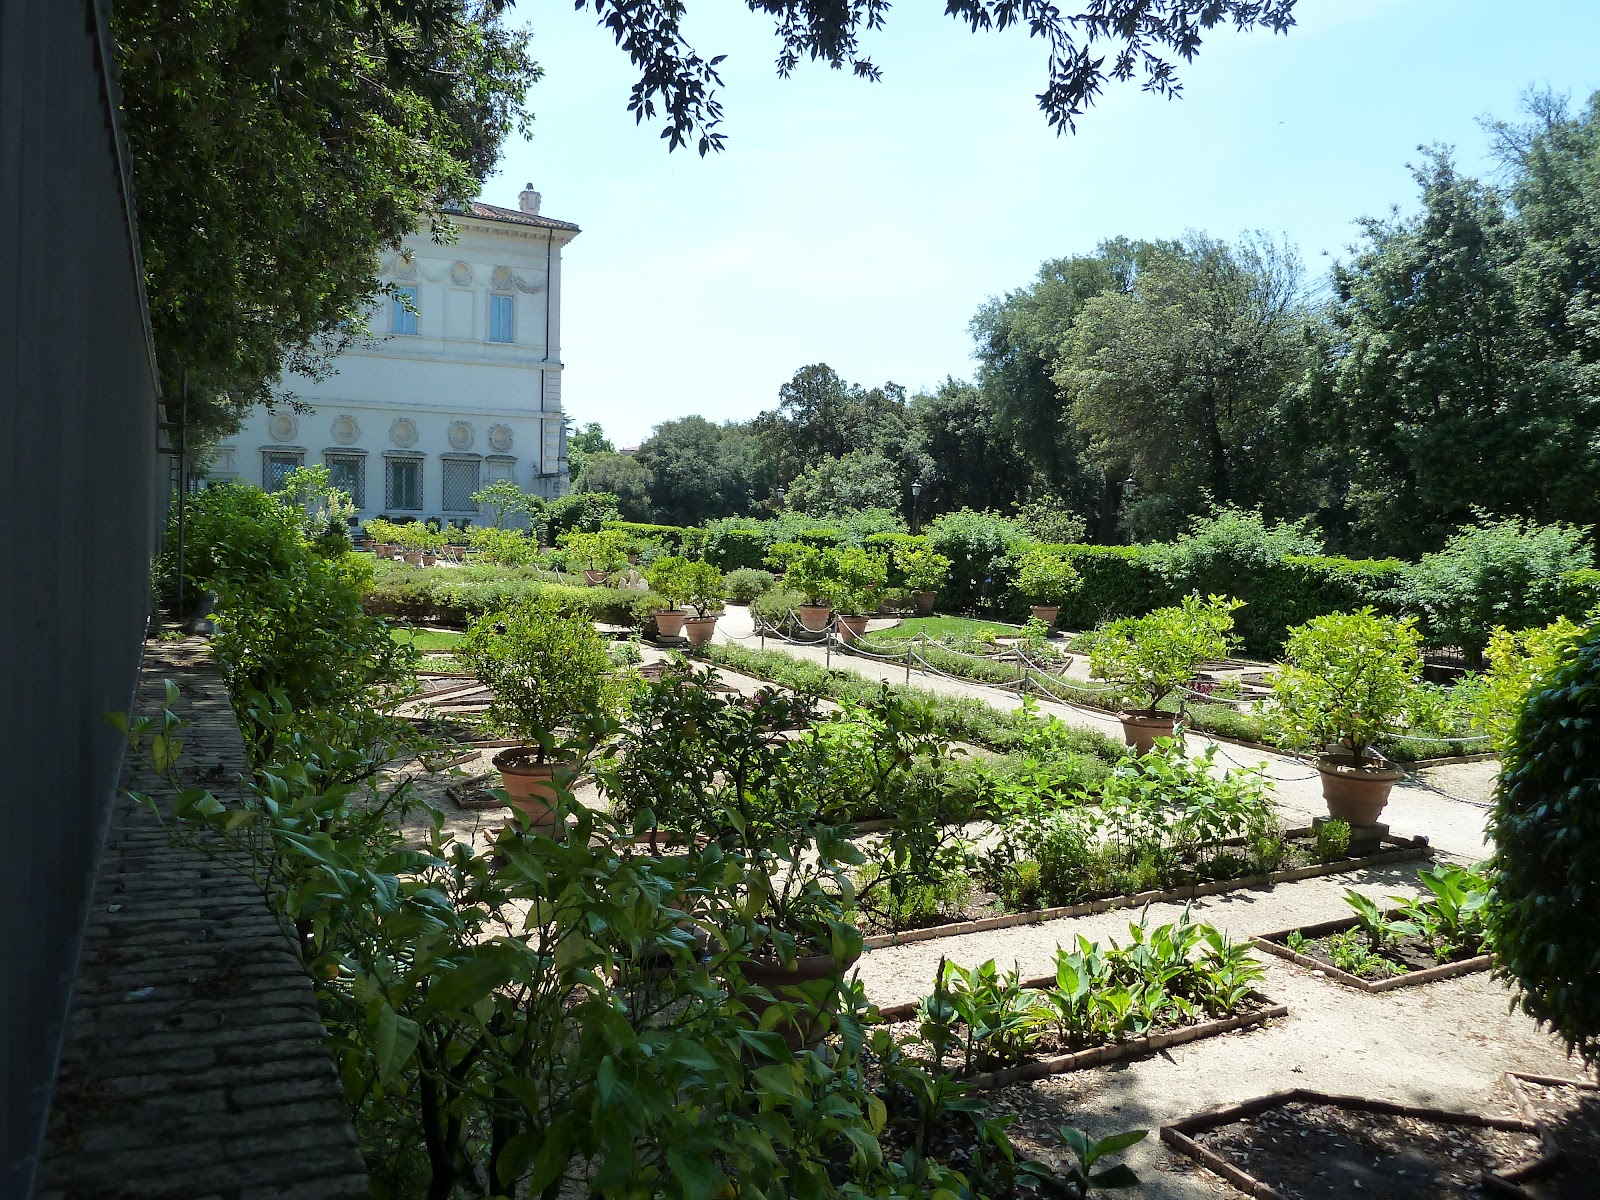 Villa Borghese Baroque Garden Wikipedia